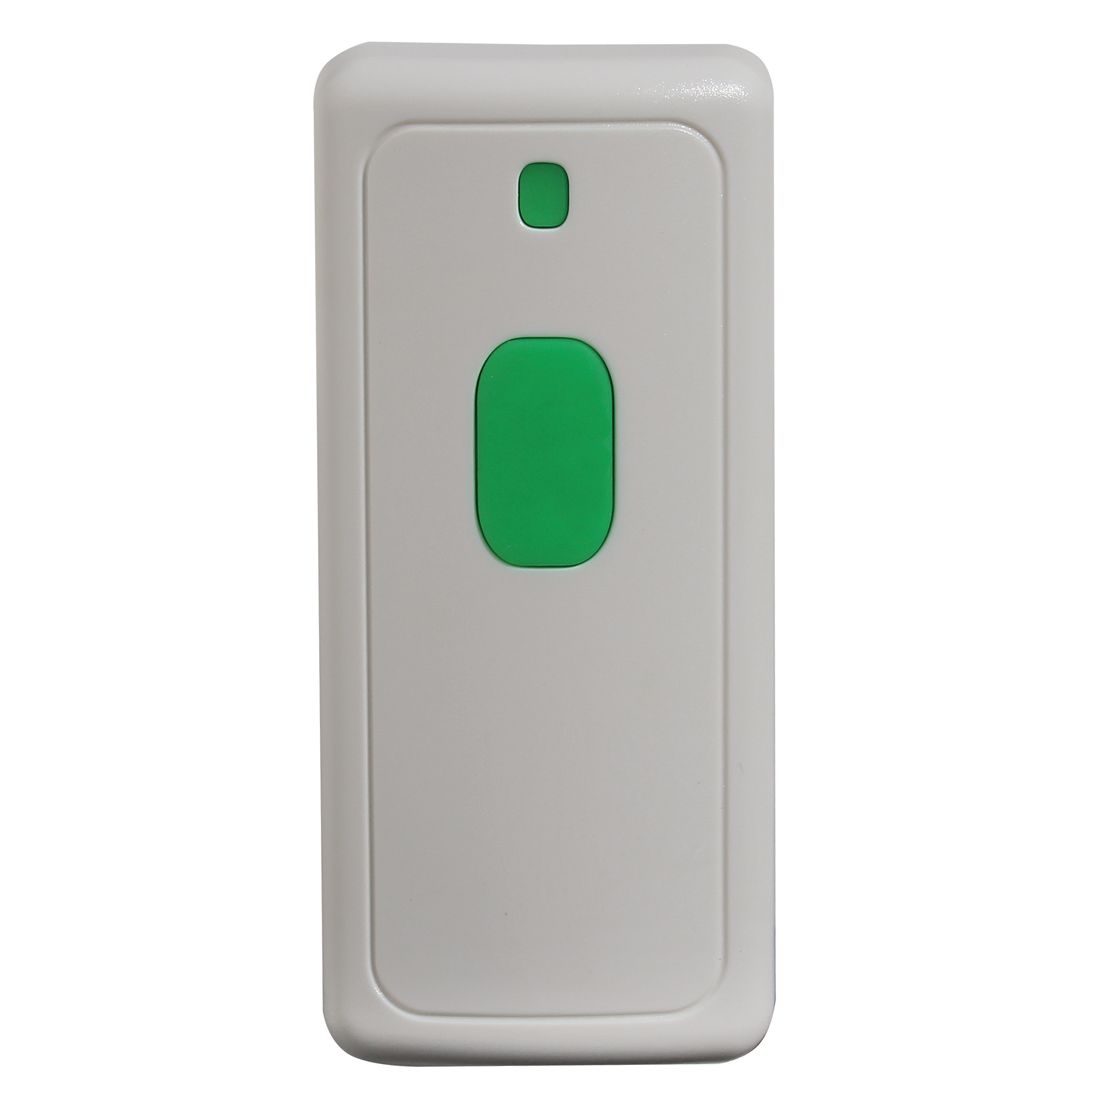 Extra Doorbell Transmitter - CentralAlert™